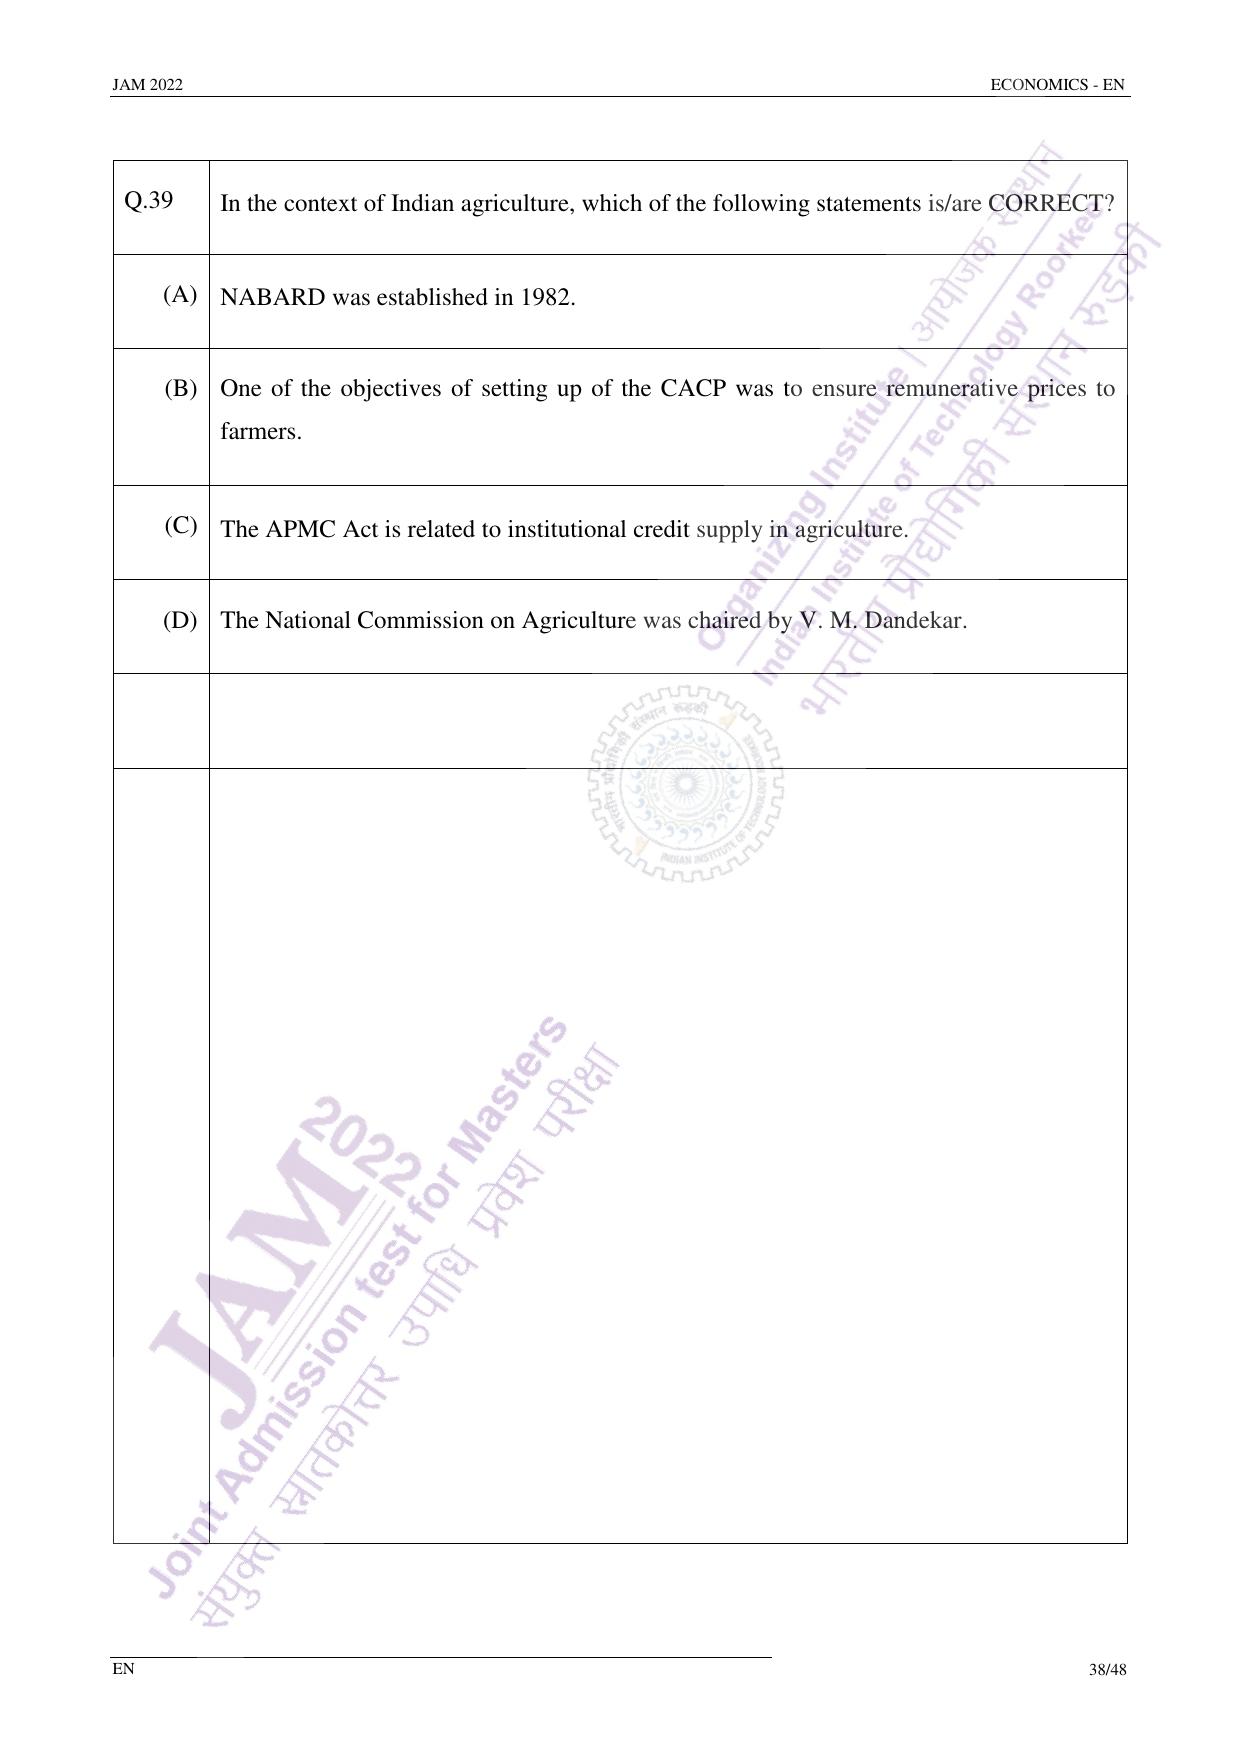 JAM 2022: EN Question Paper - Page 37